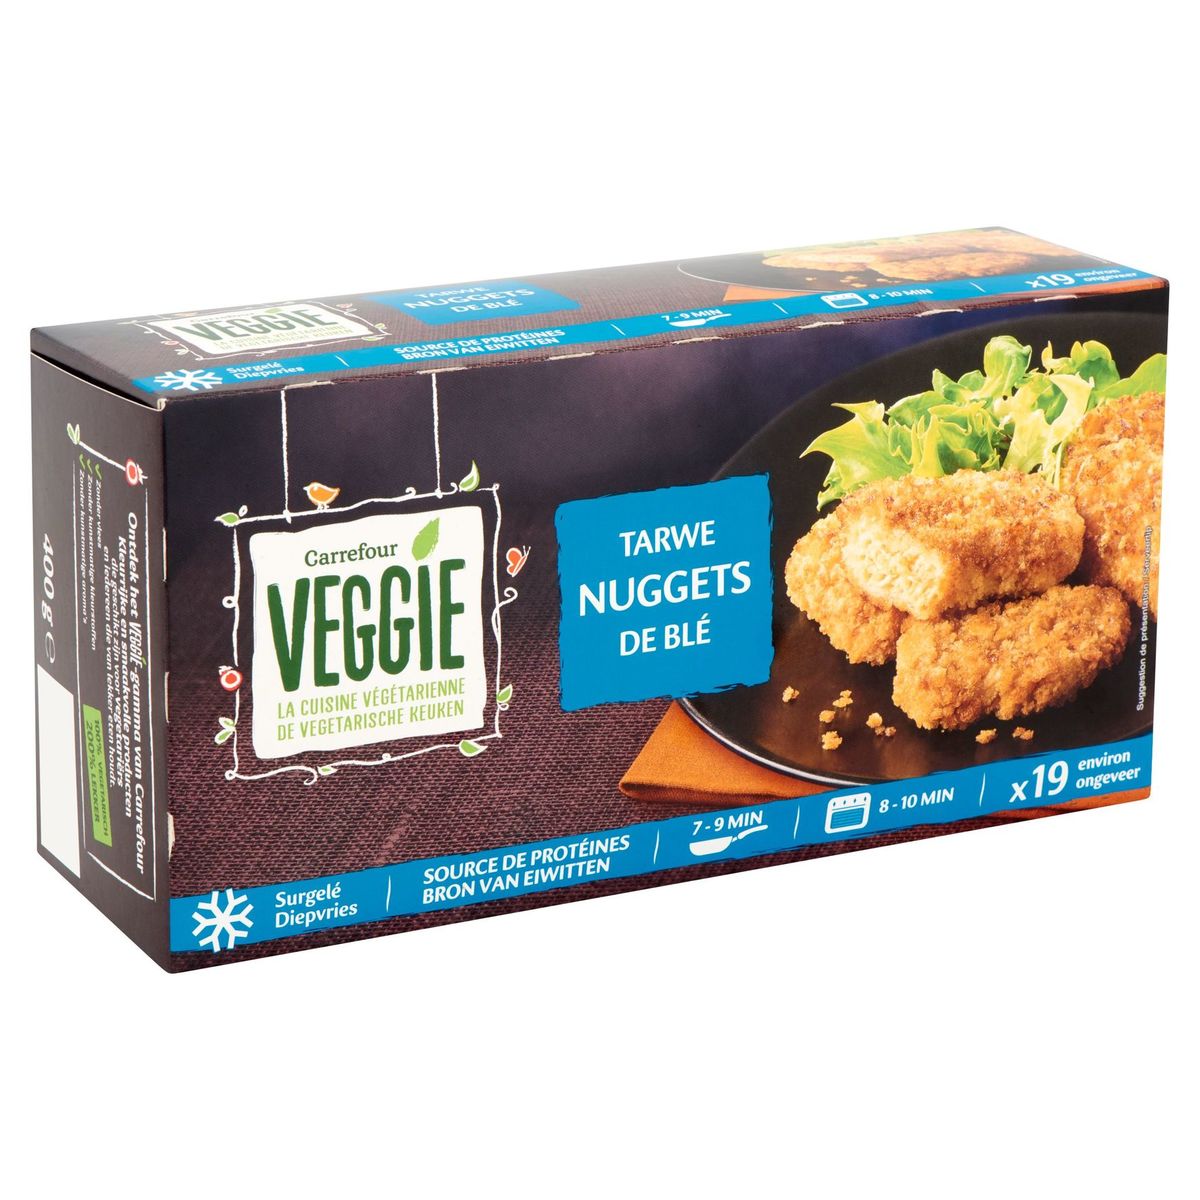 Carrefour Veggie Tarwe Nuggets 400 g